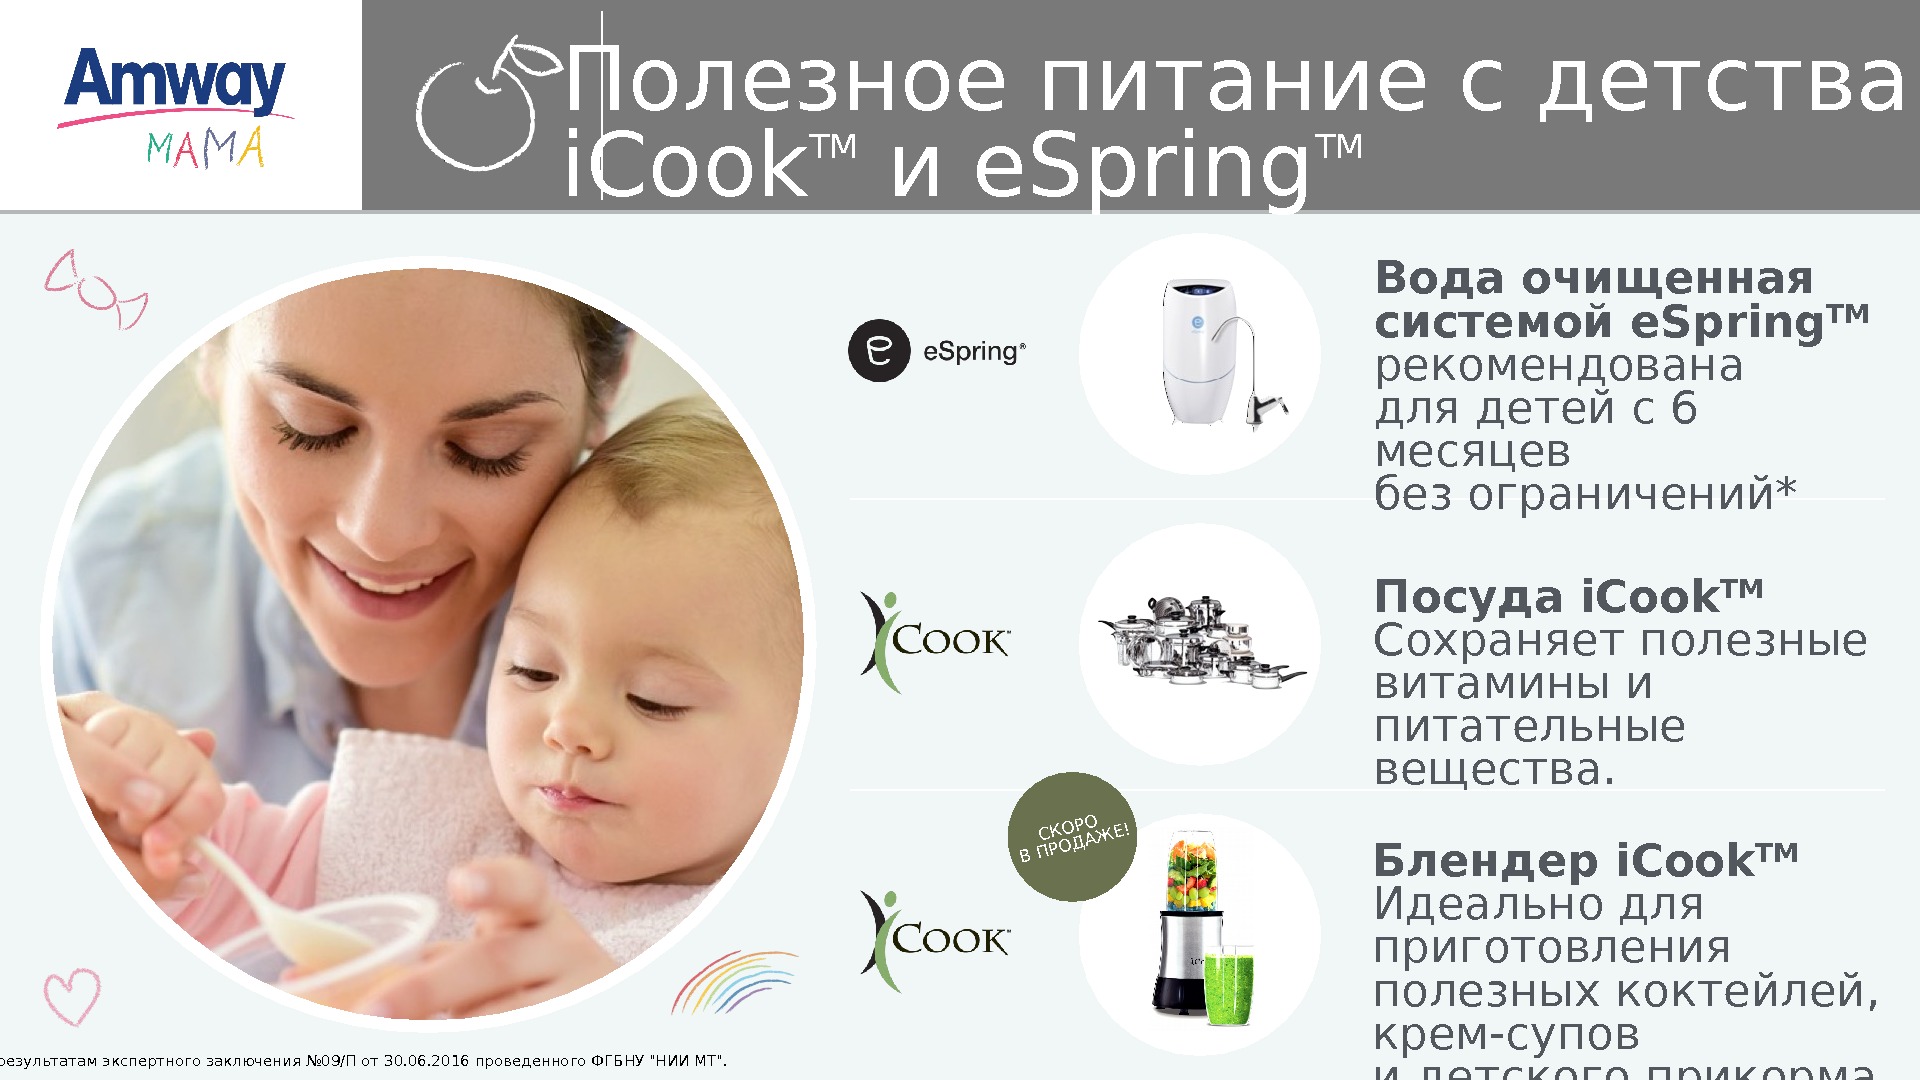 Полезное питание с детства — i. Cook TM и e. Spring TM Посуда i.